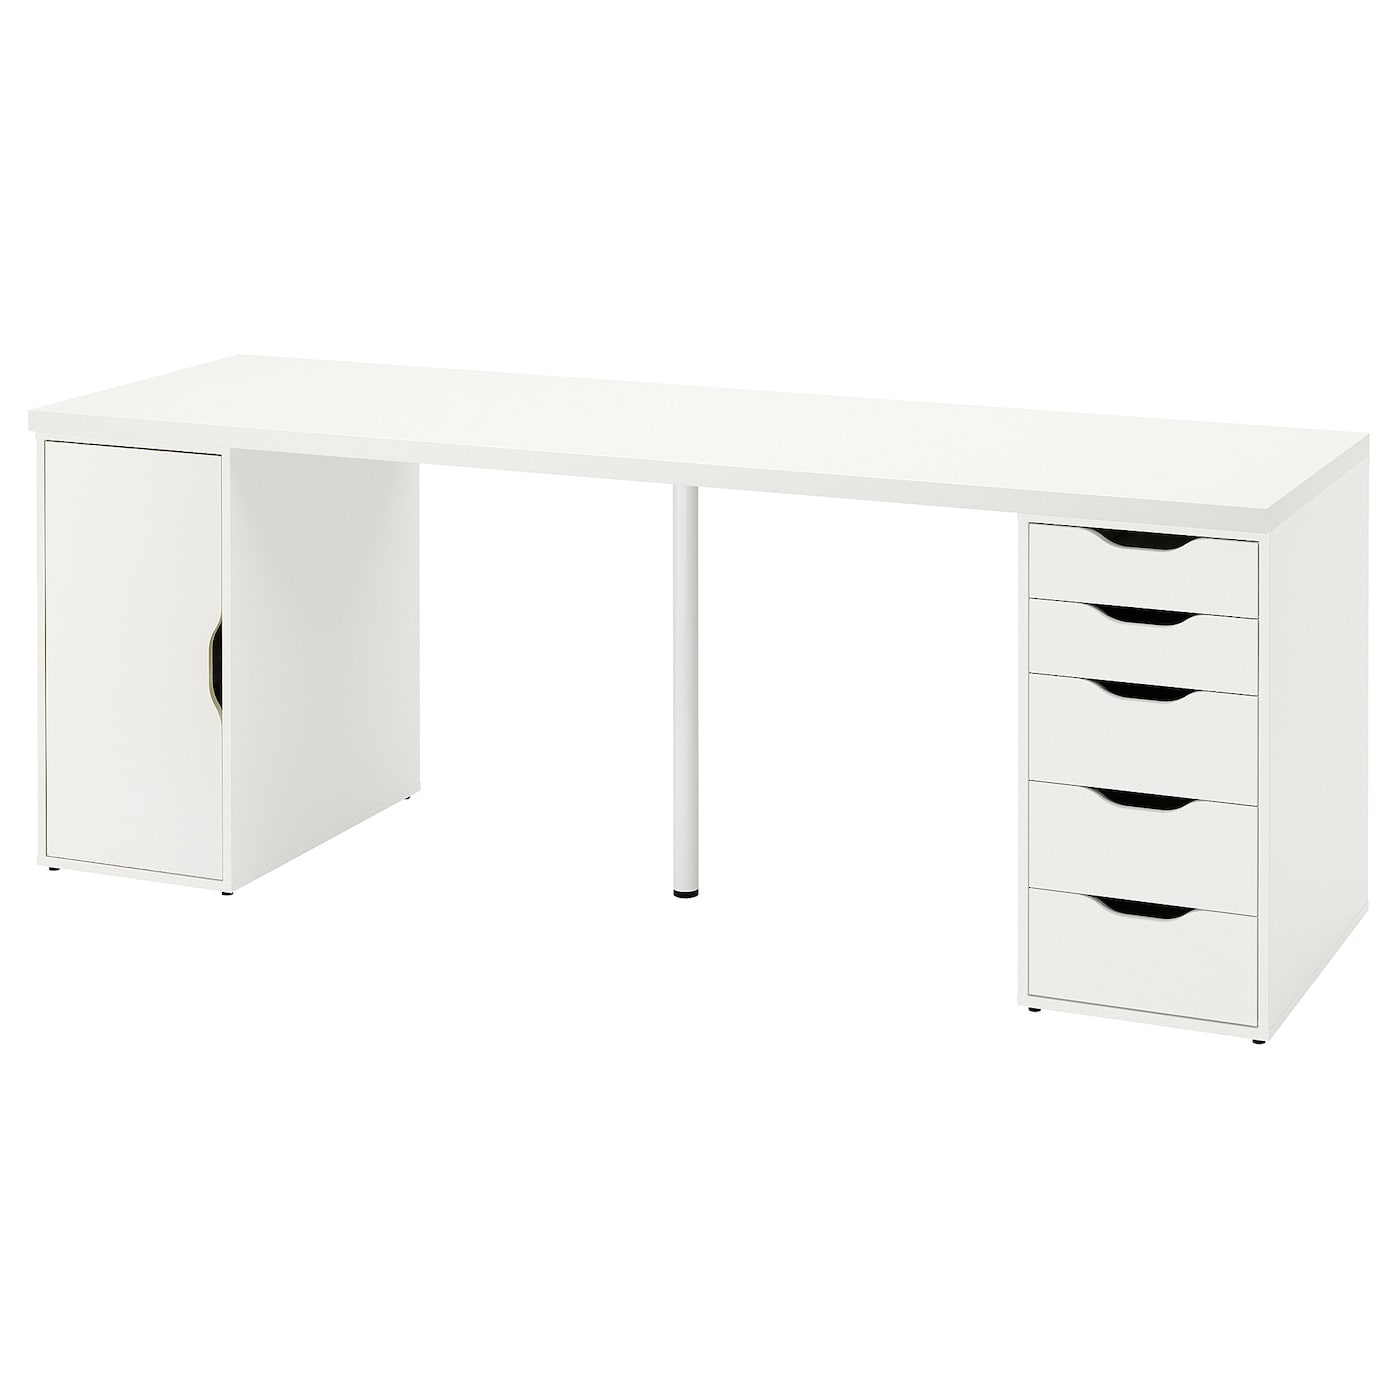 Письменный стол с ящиками - IKEA ALEX/АЛЕКС ИКЕА, 200x60 см, белый